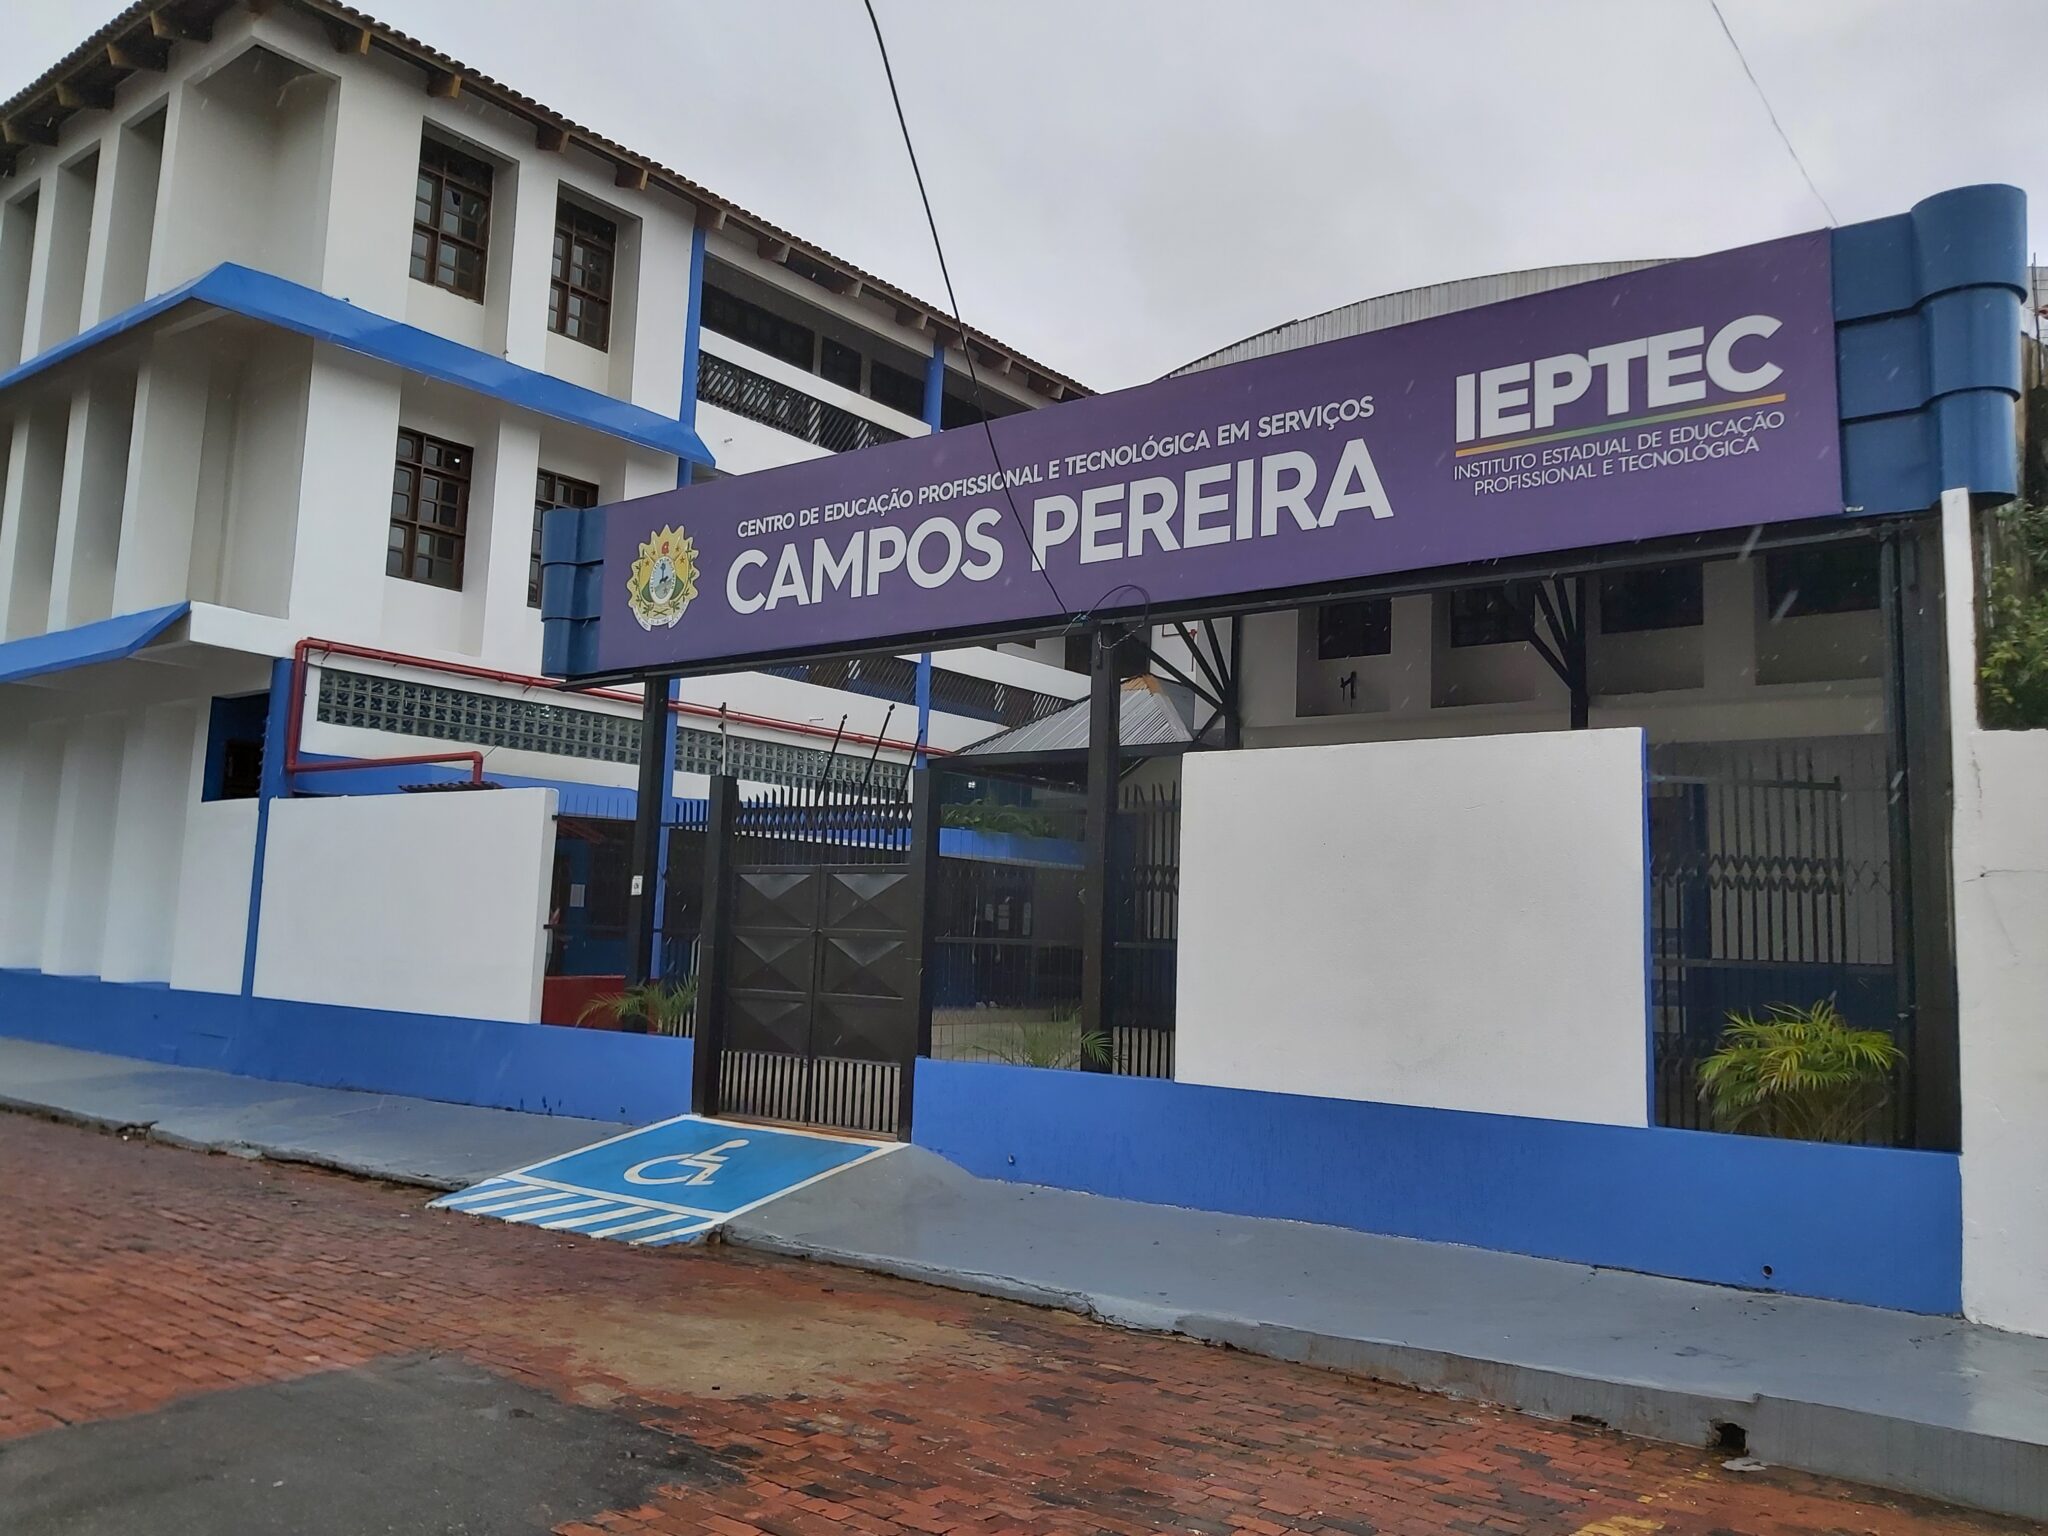 Centro em Serviços Campos Pereira, da Rede Ieptec, em Rio Branco. Foto: Assessoria Ieptec.